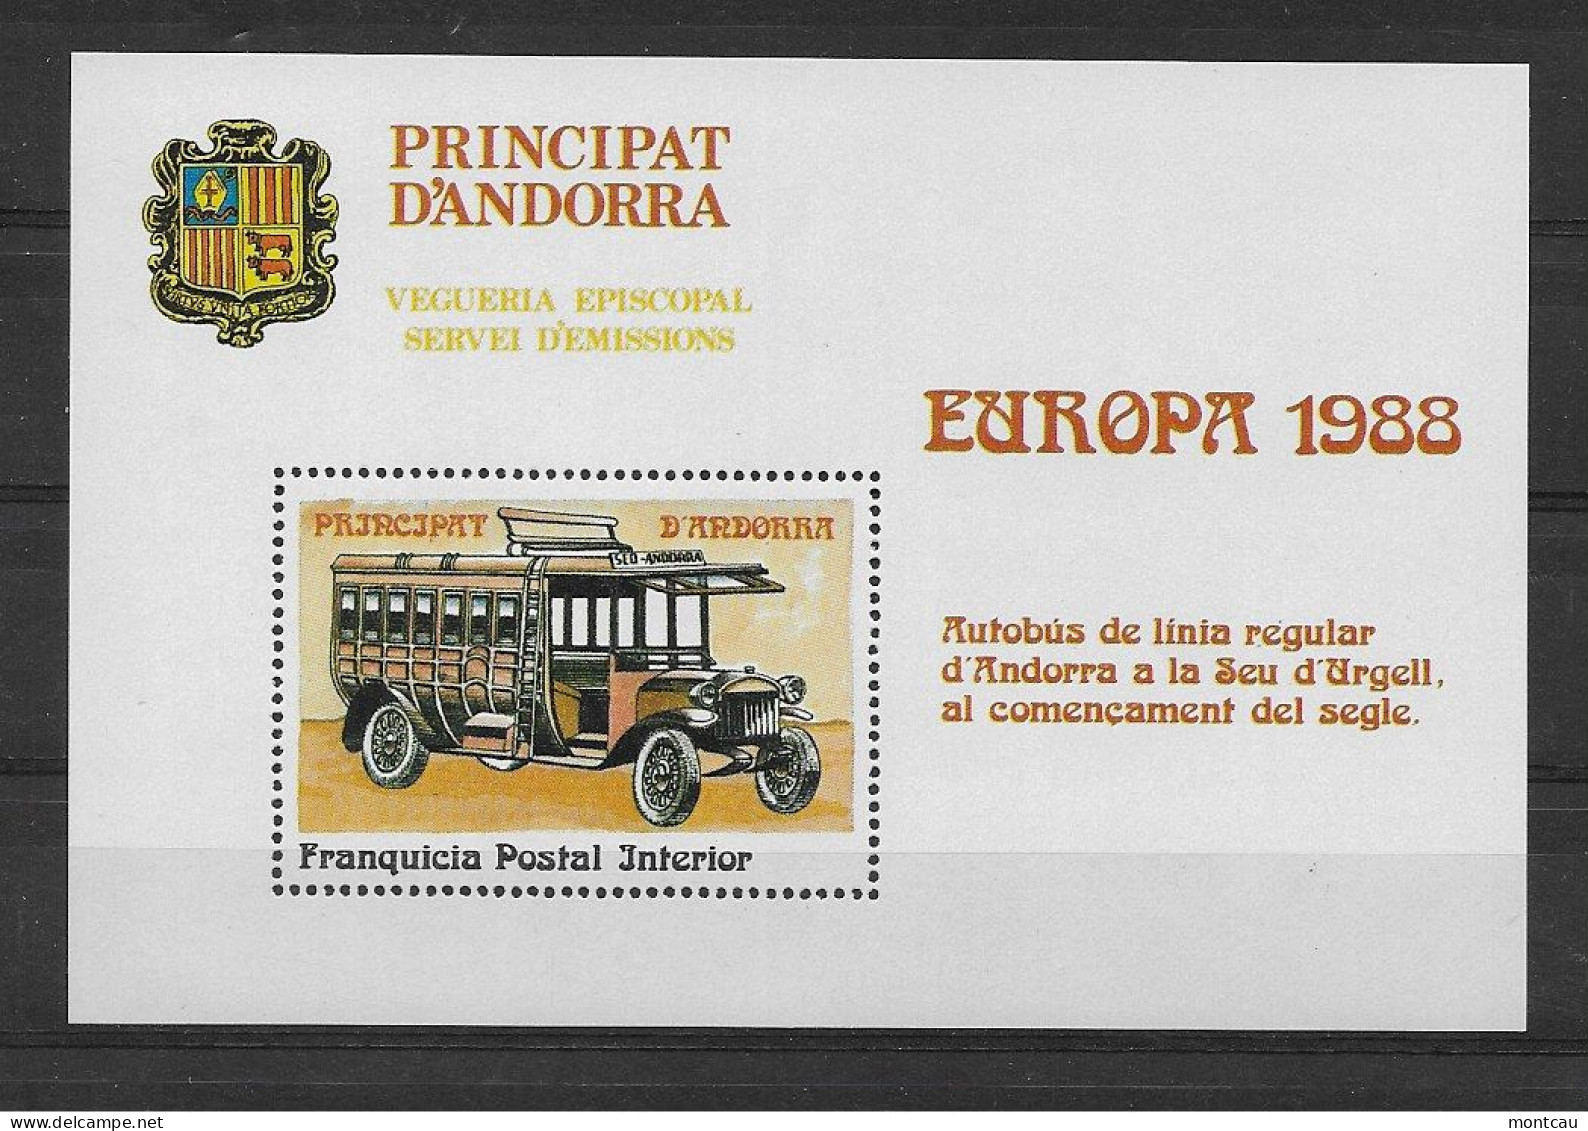 Andorra - 1988 - Vegueria Episcopal Europa - Episcopale Vignetten